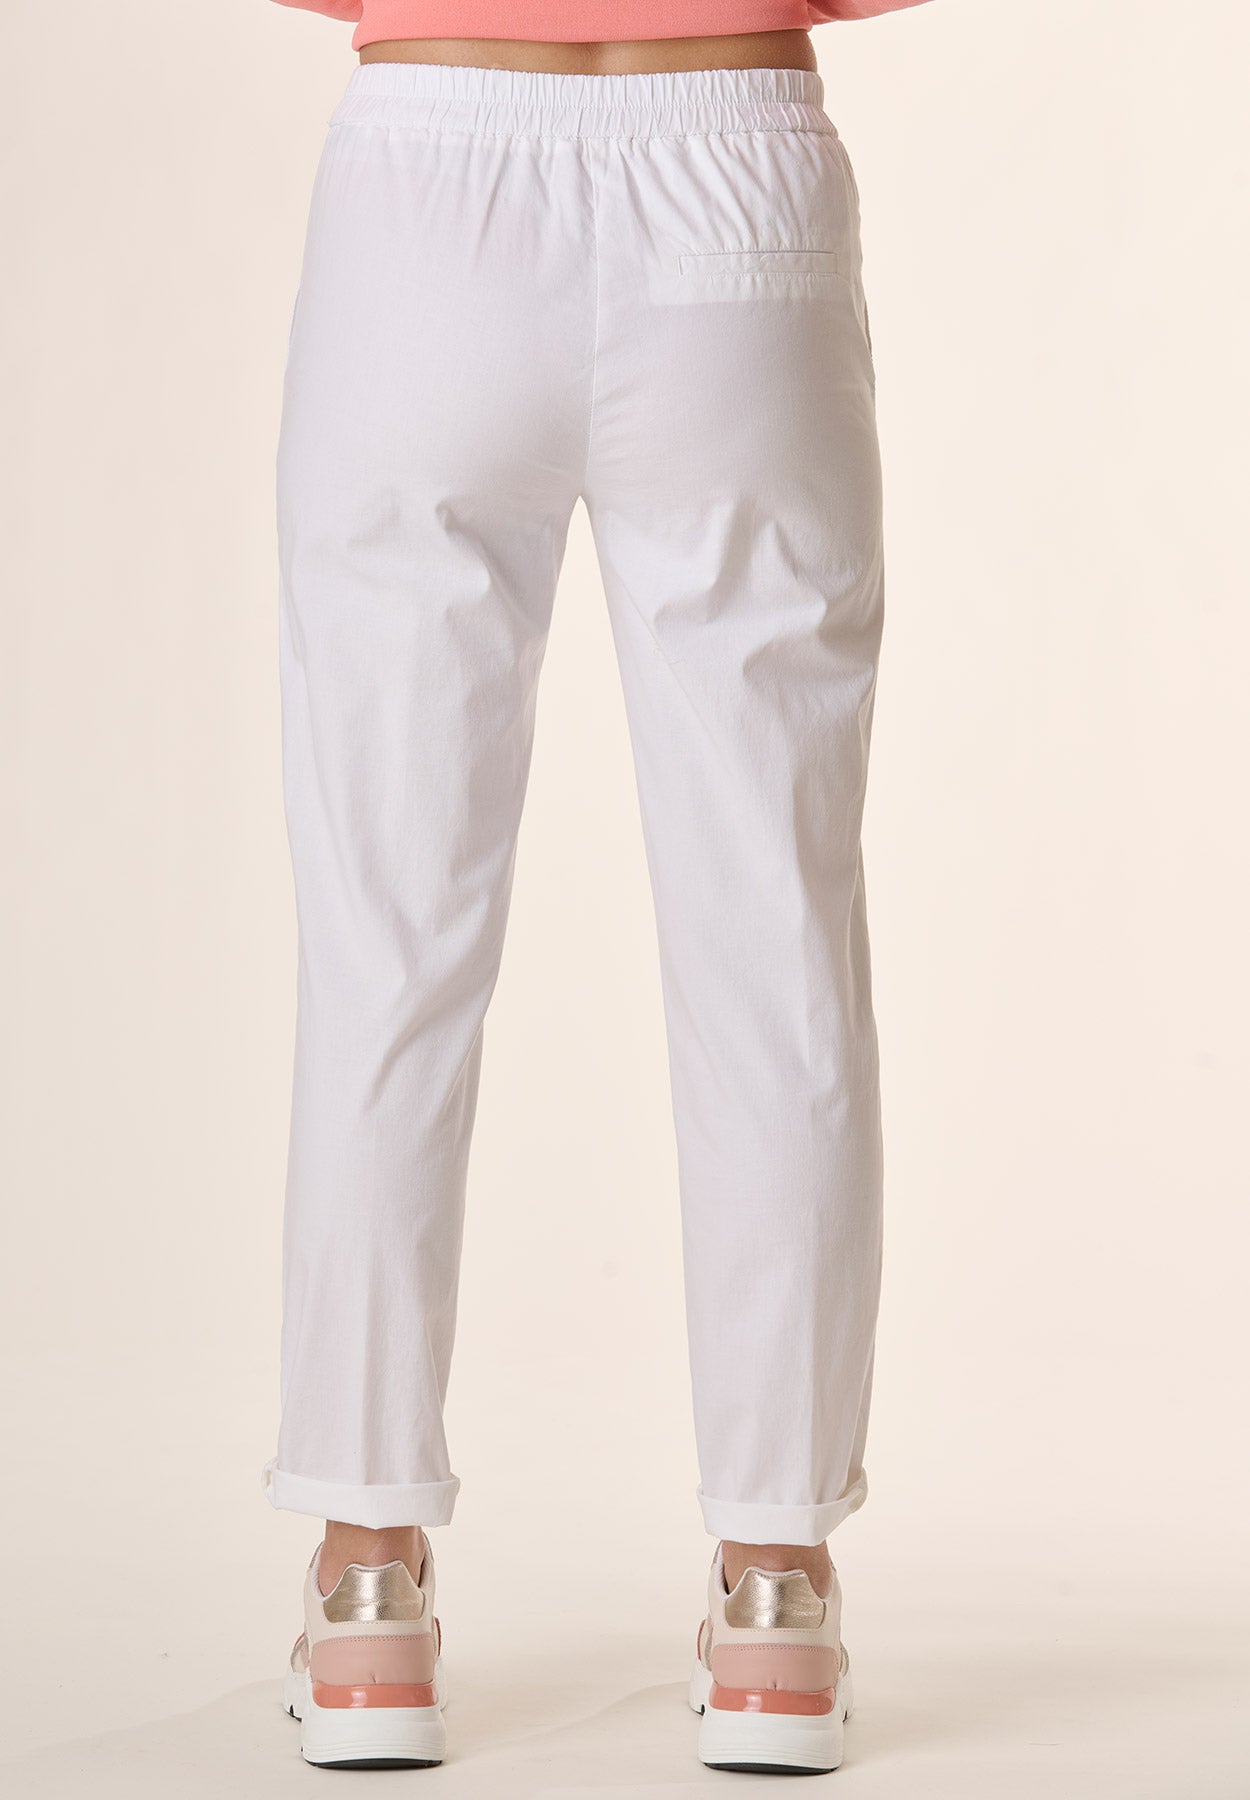 Pantalone bianco elastico in vita cotone stretch